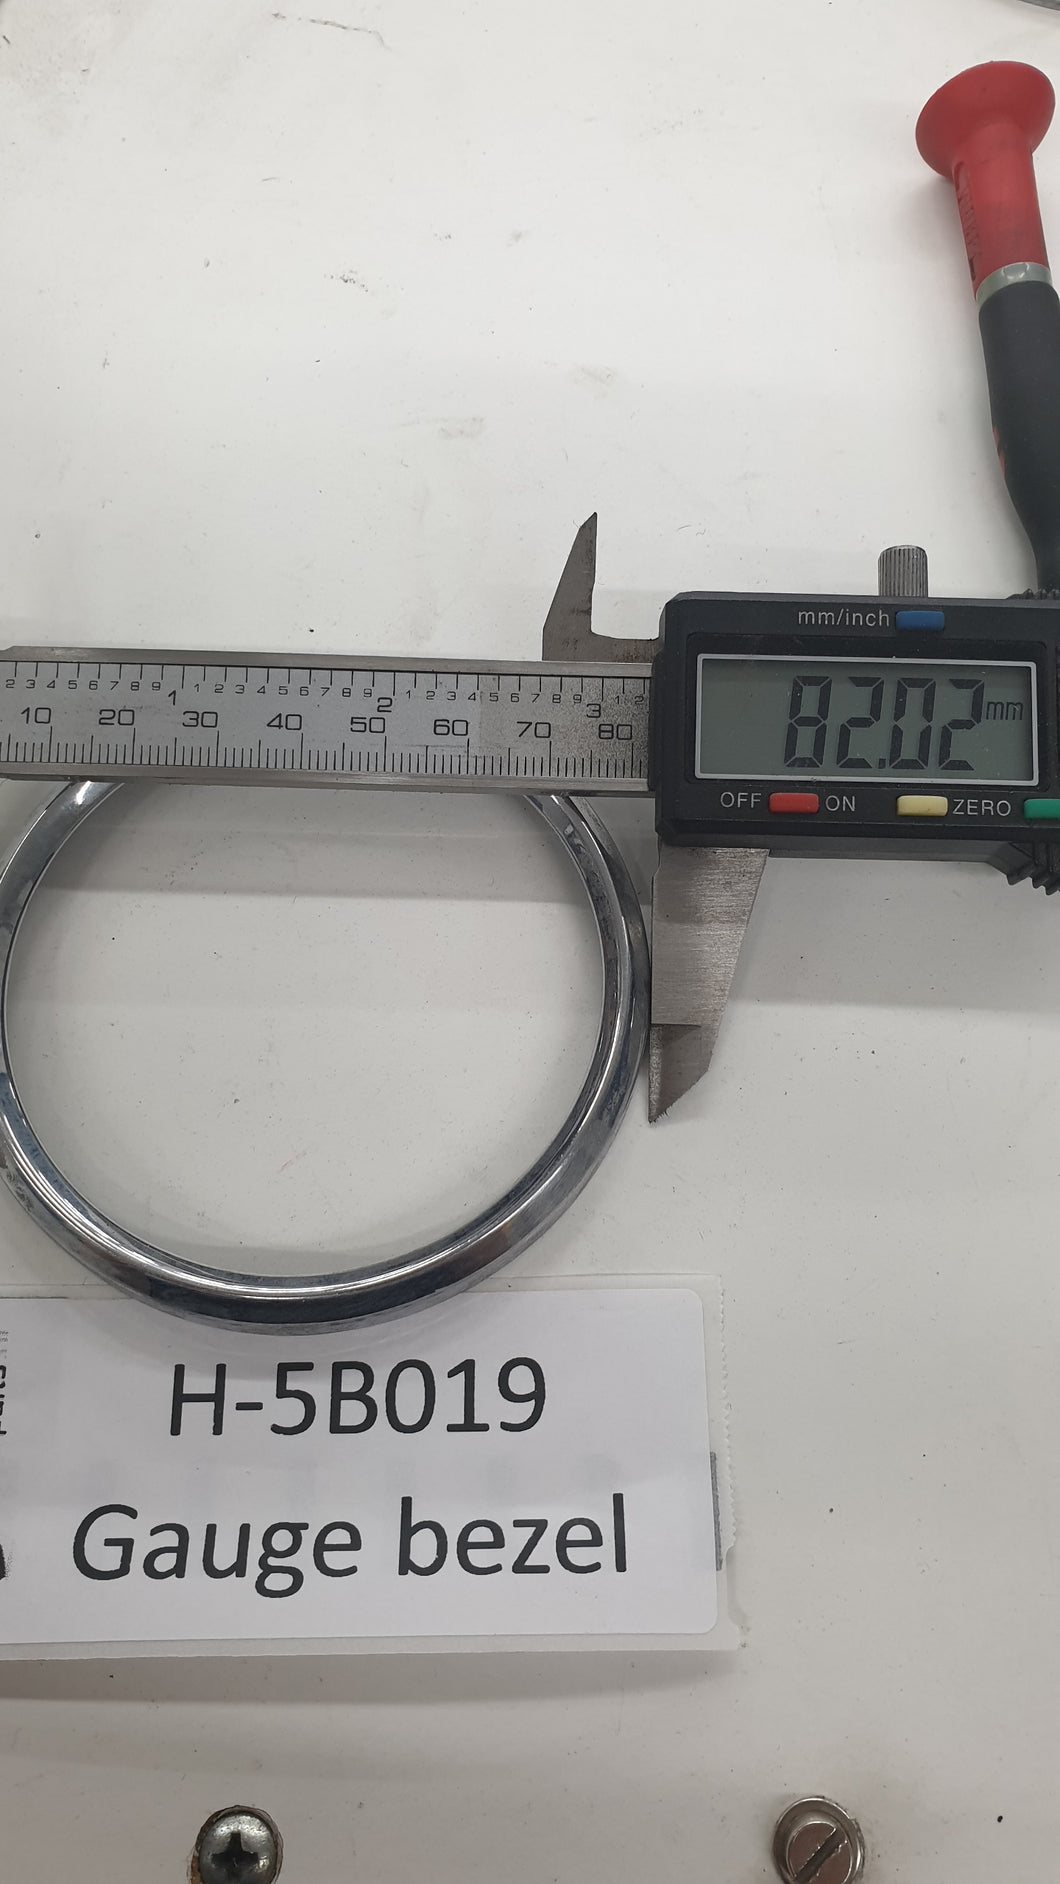 H-5B019 gauge bezel